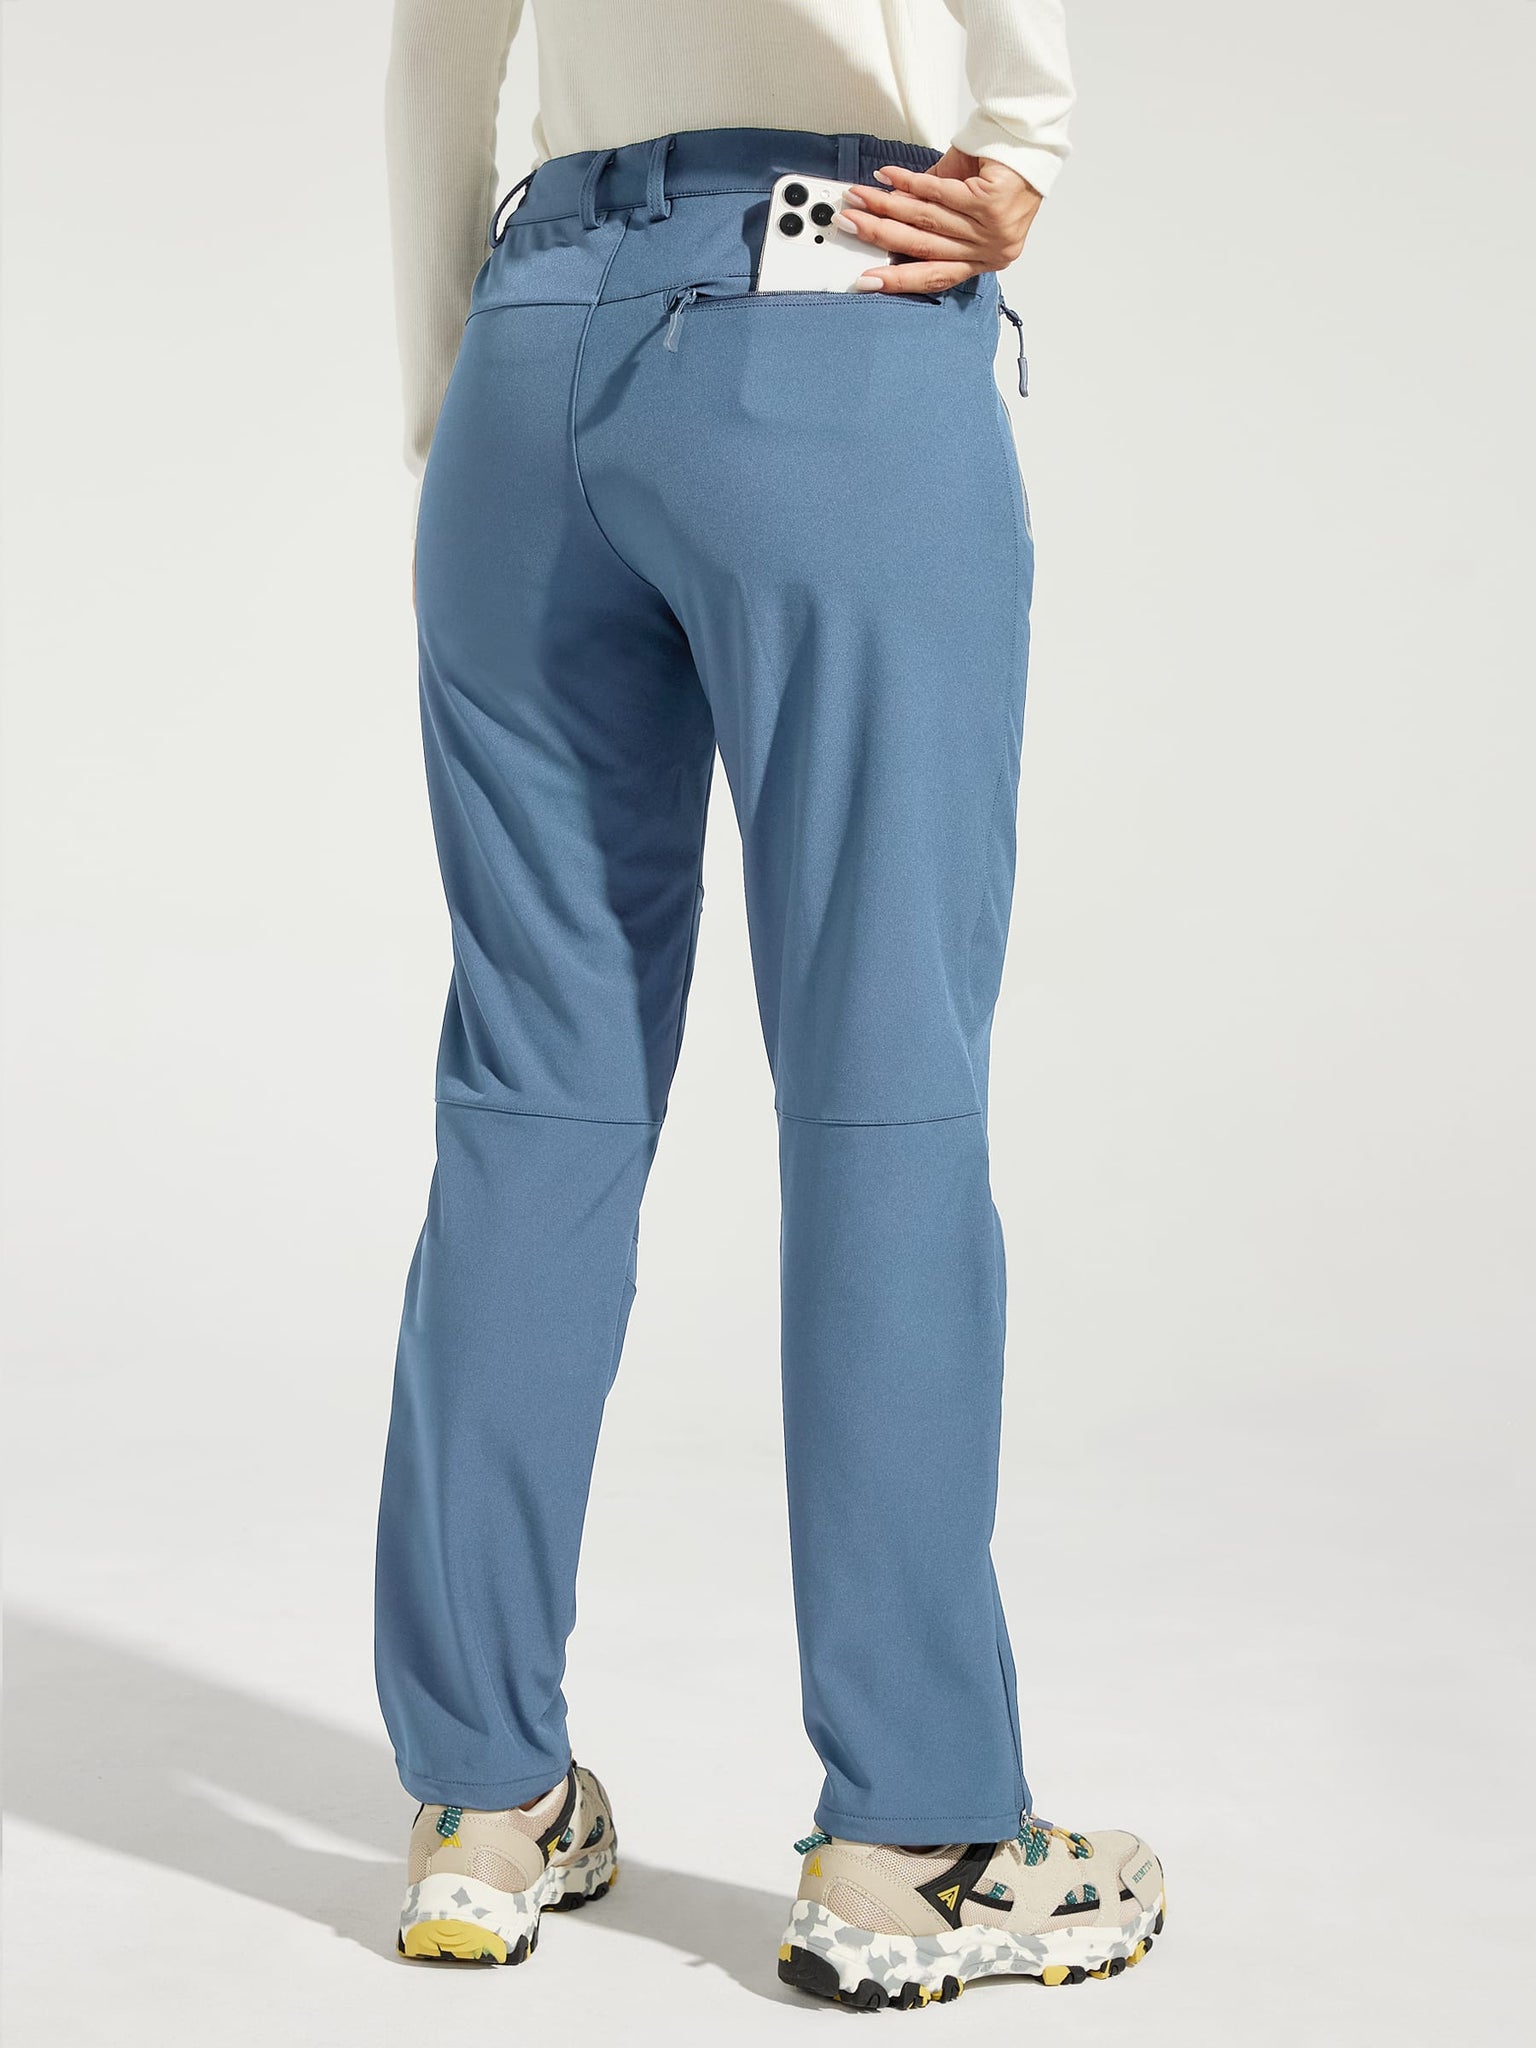 Women's Fleece Lined Snow Cargo Pants_Blue_model3